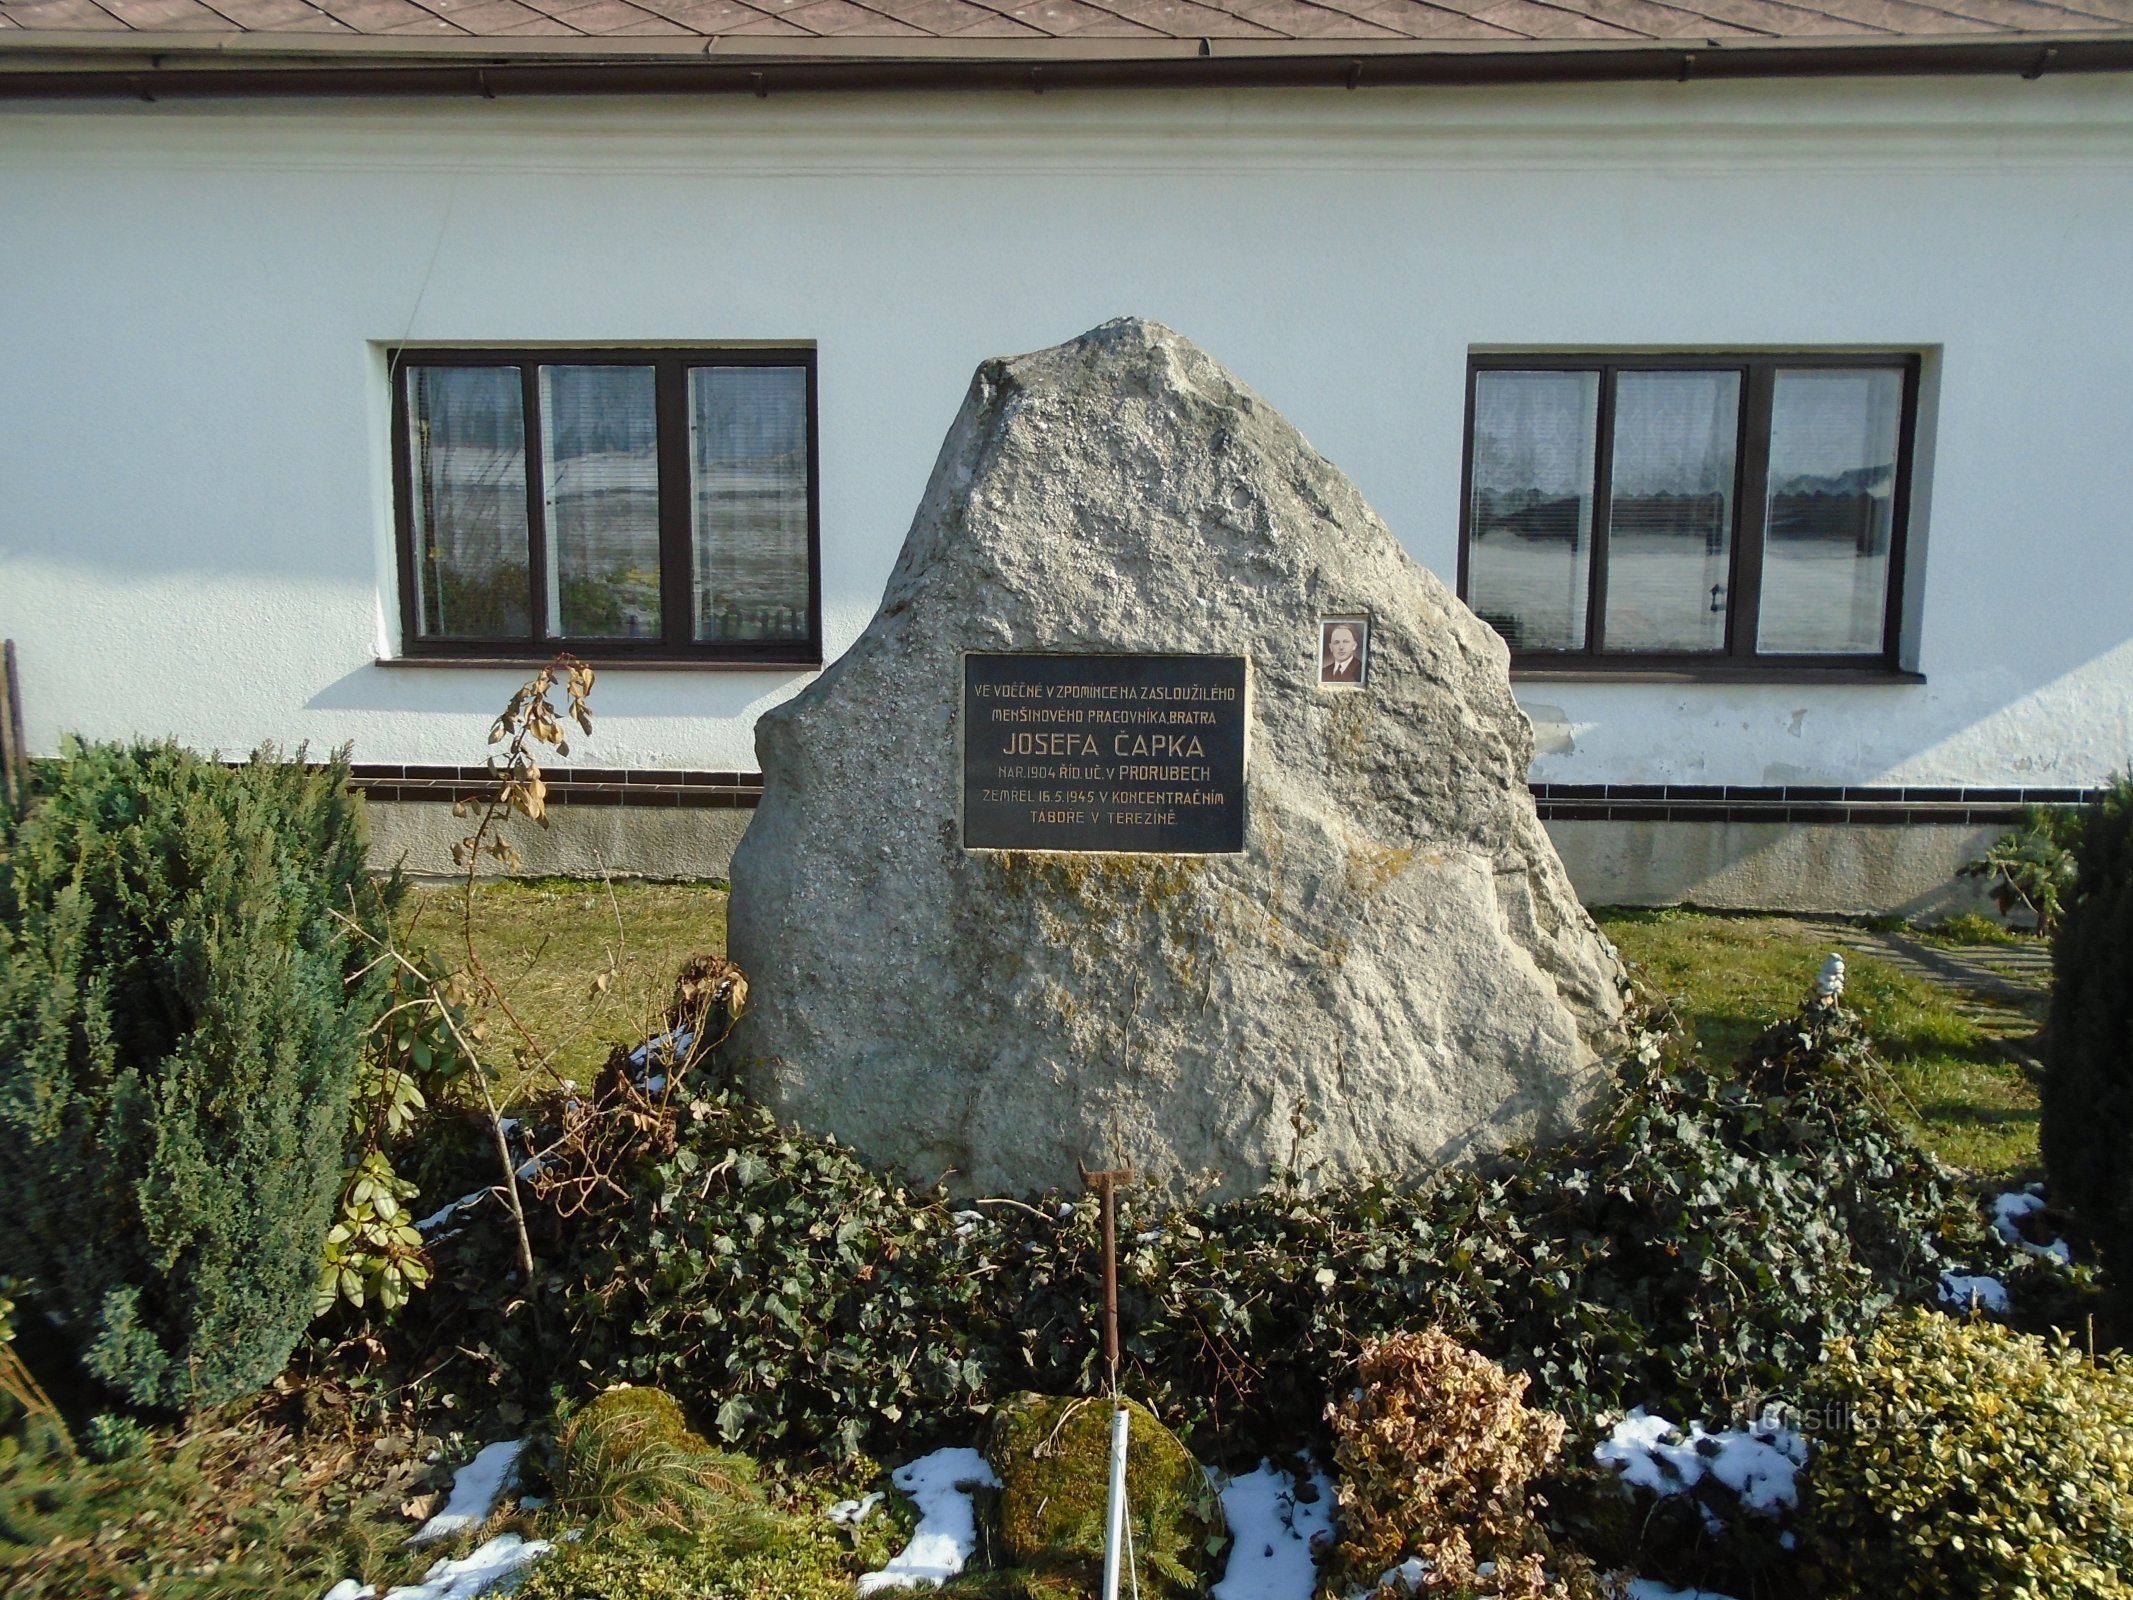 Monumento a J. Čapek frente al No. 24 (Curuby)